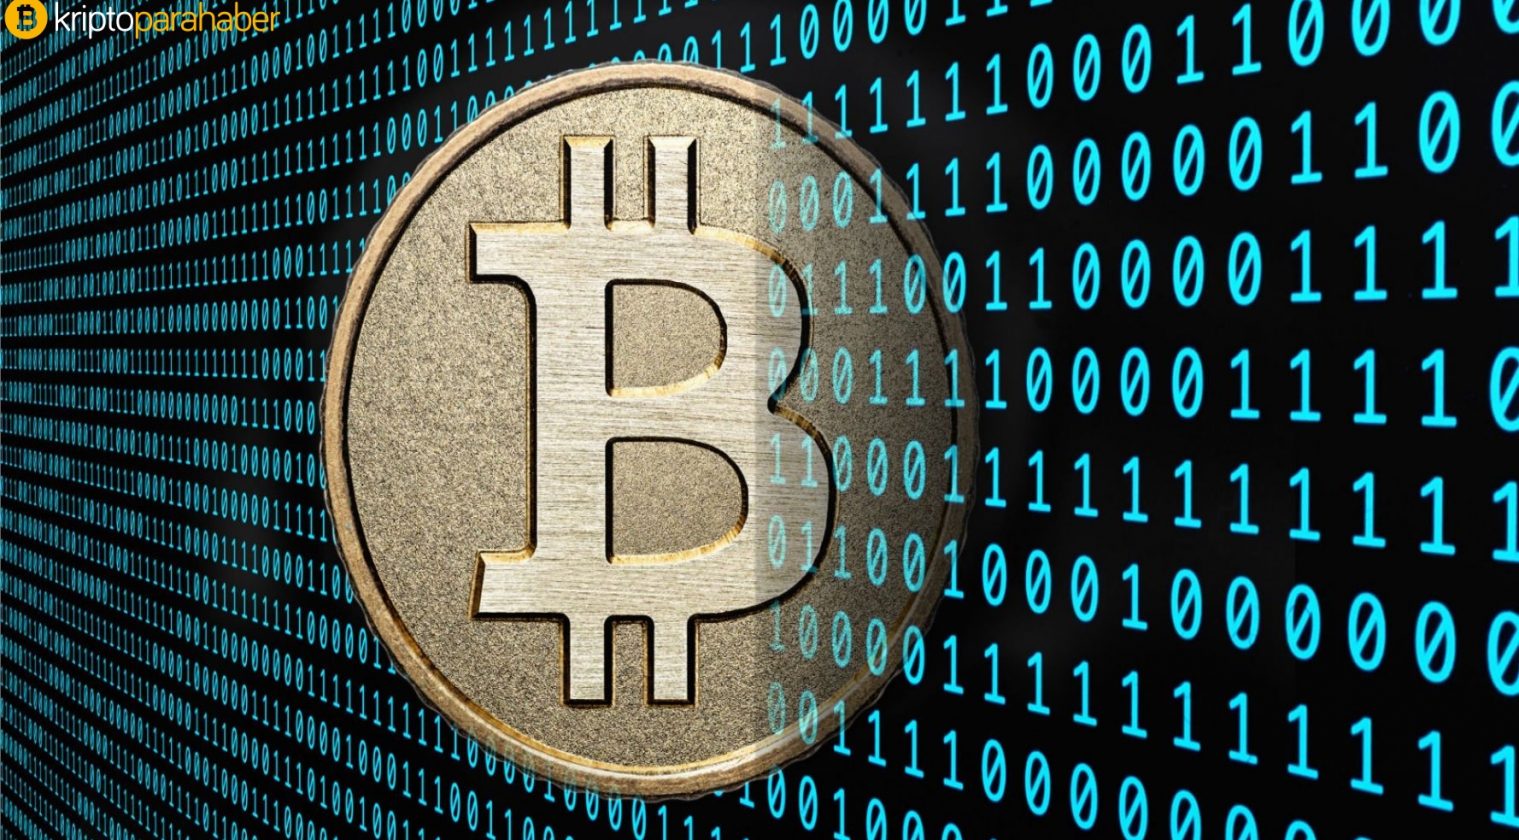 Üniversite Öğrenci Çetesi “Breaking Bad” Bitcoin ödemeleri ile uyuşturucu sattı